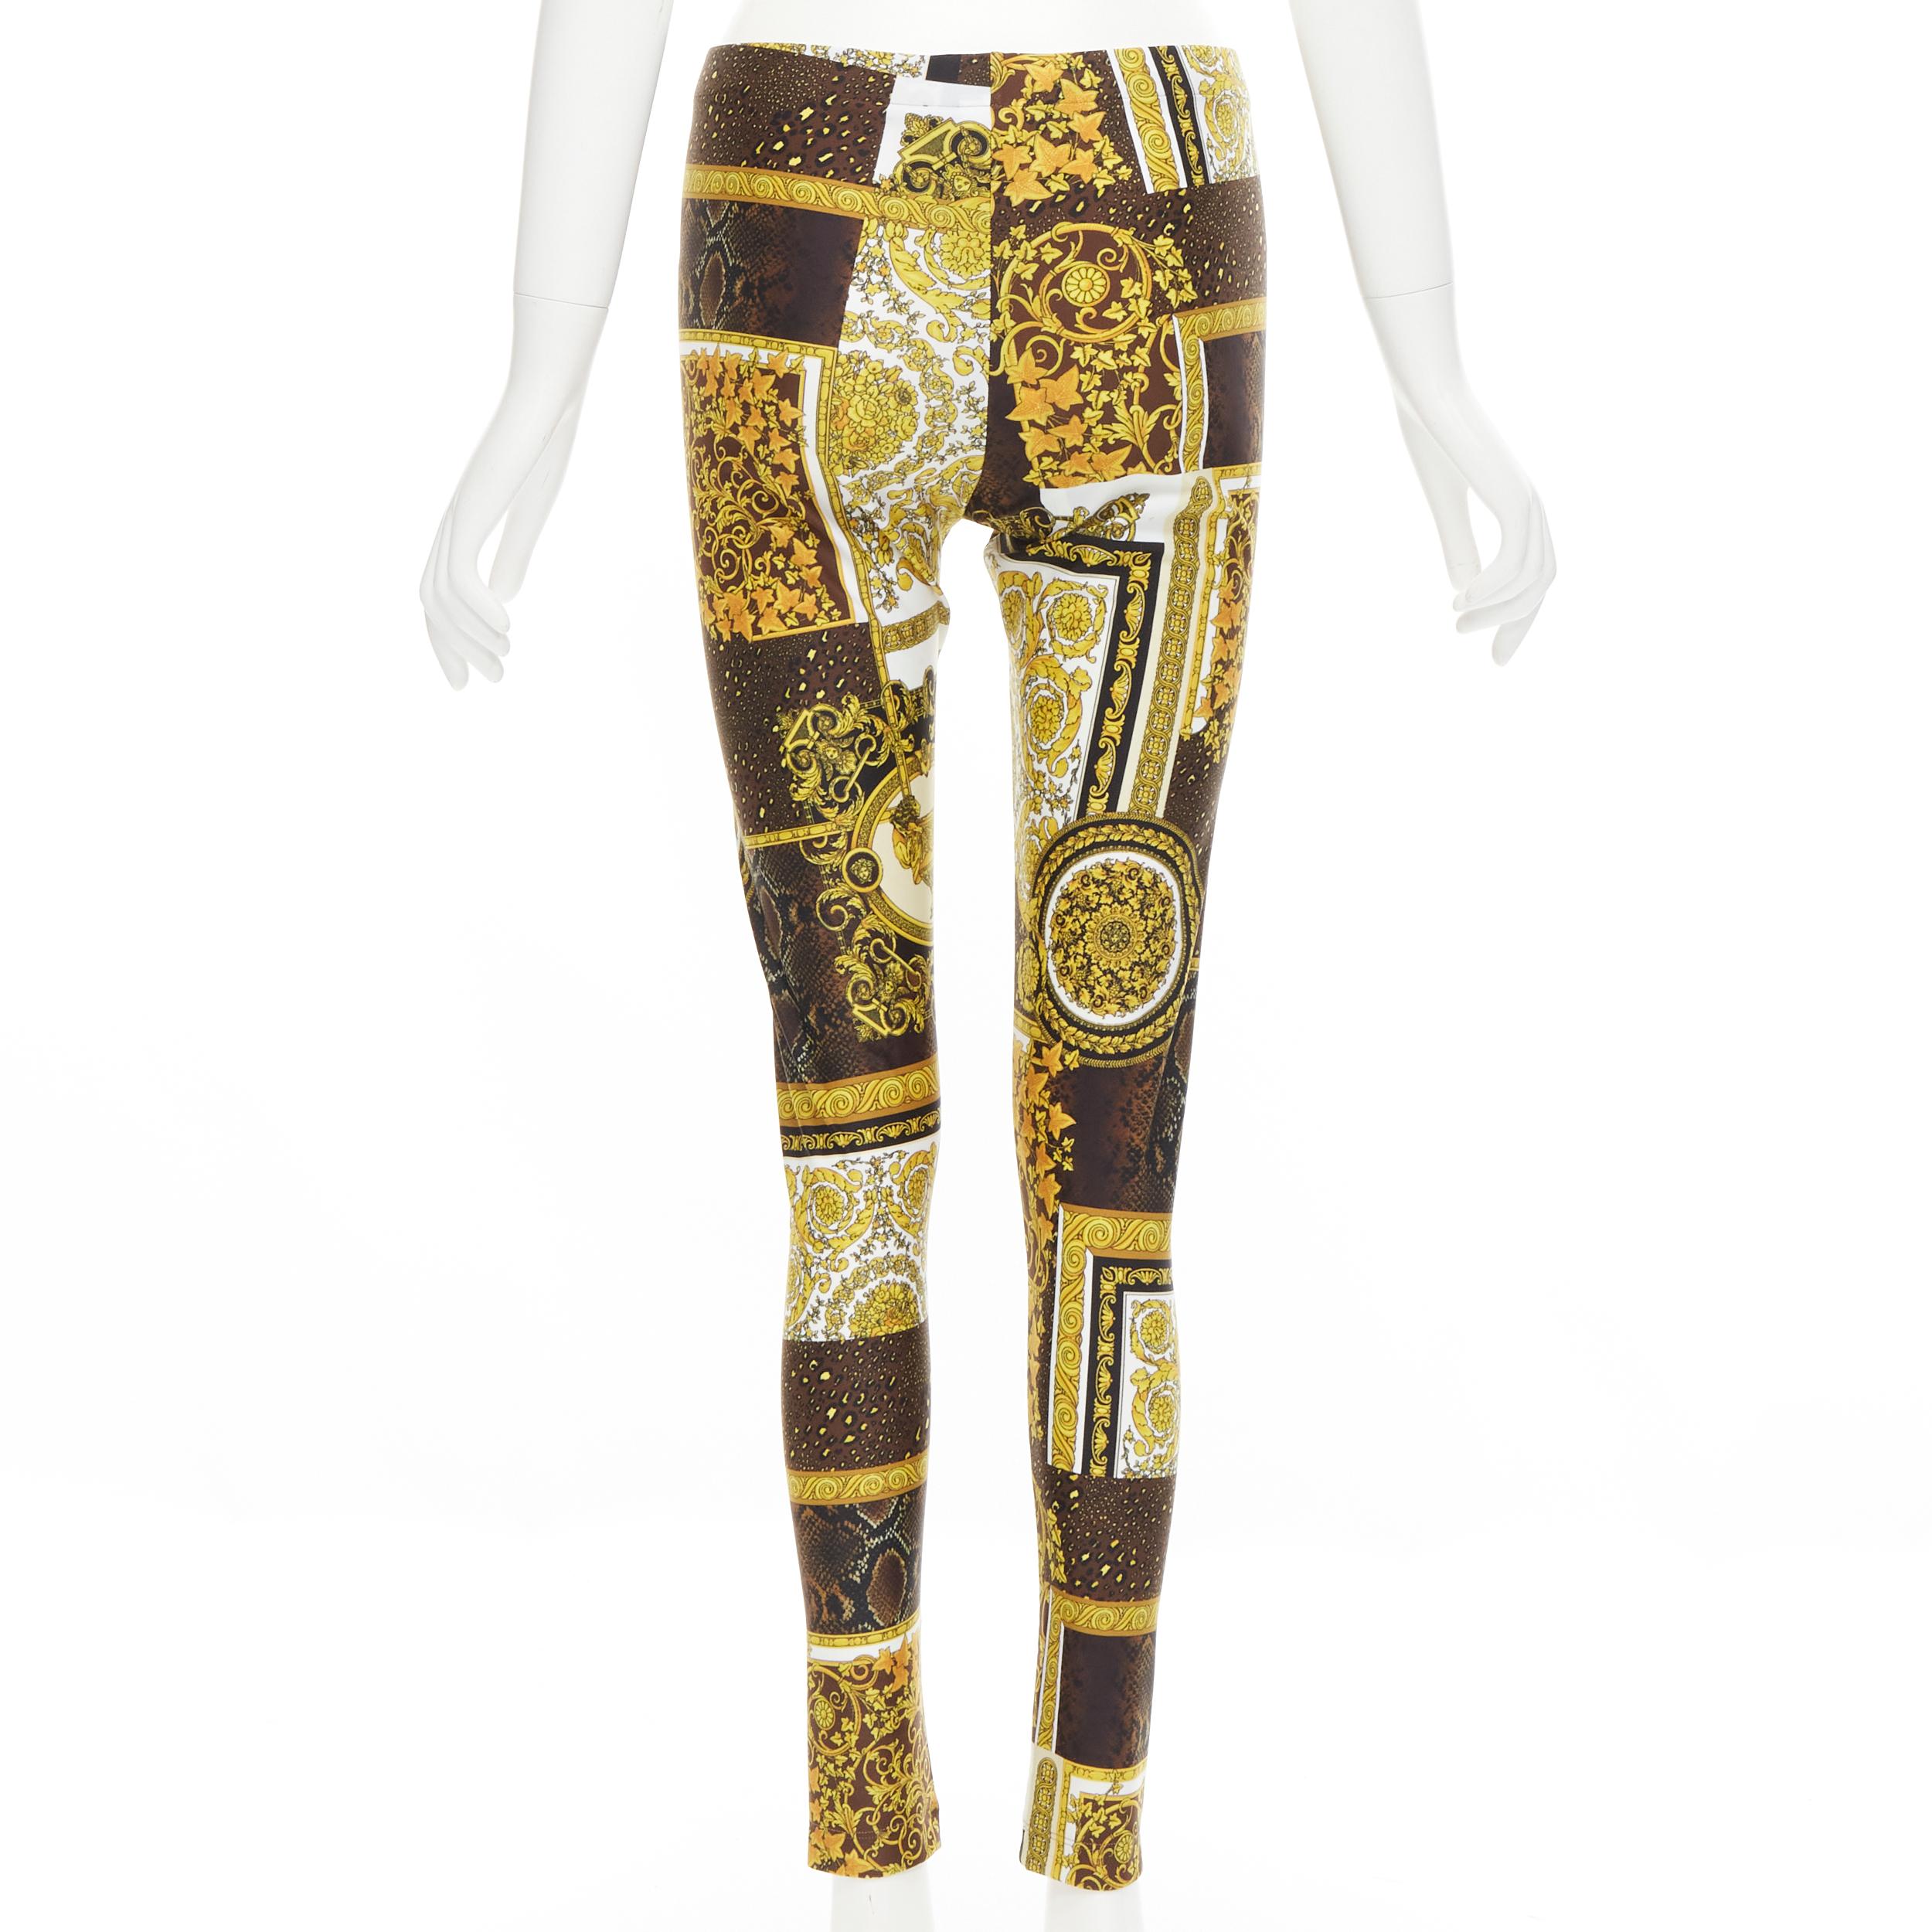 Versace - Pantalon legging extensible marron baroque à imprimé doré et mosaïque, taille IT 44 L, état neuf, 2021 Pour femmes en vente